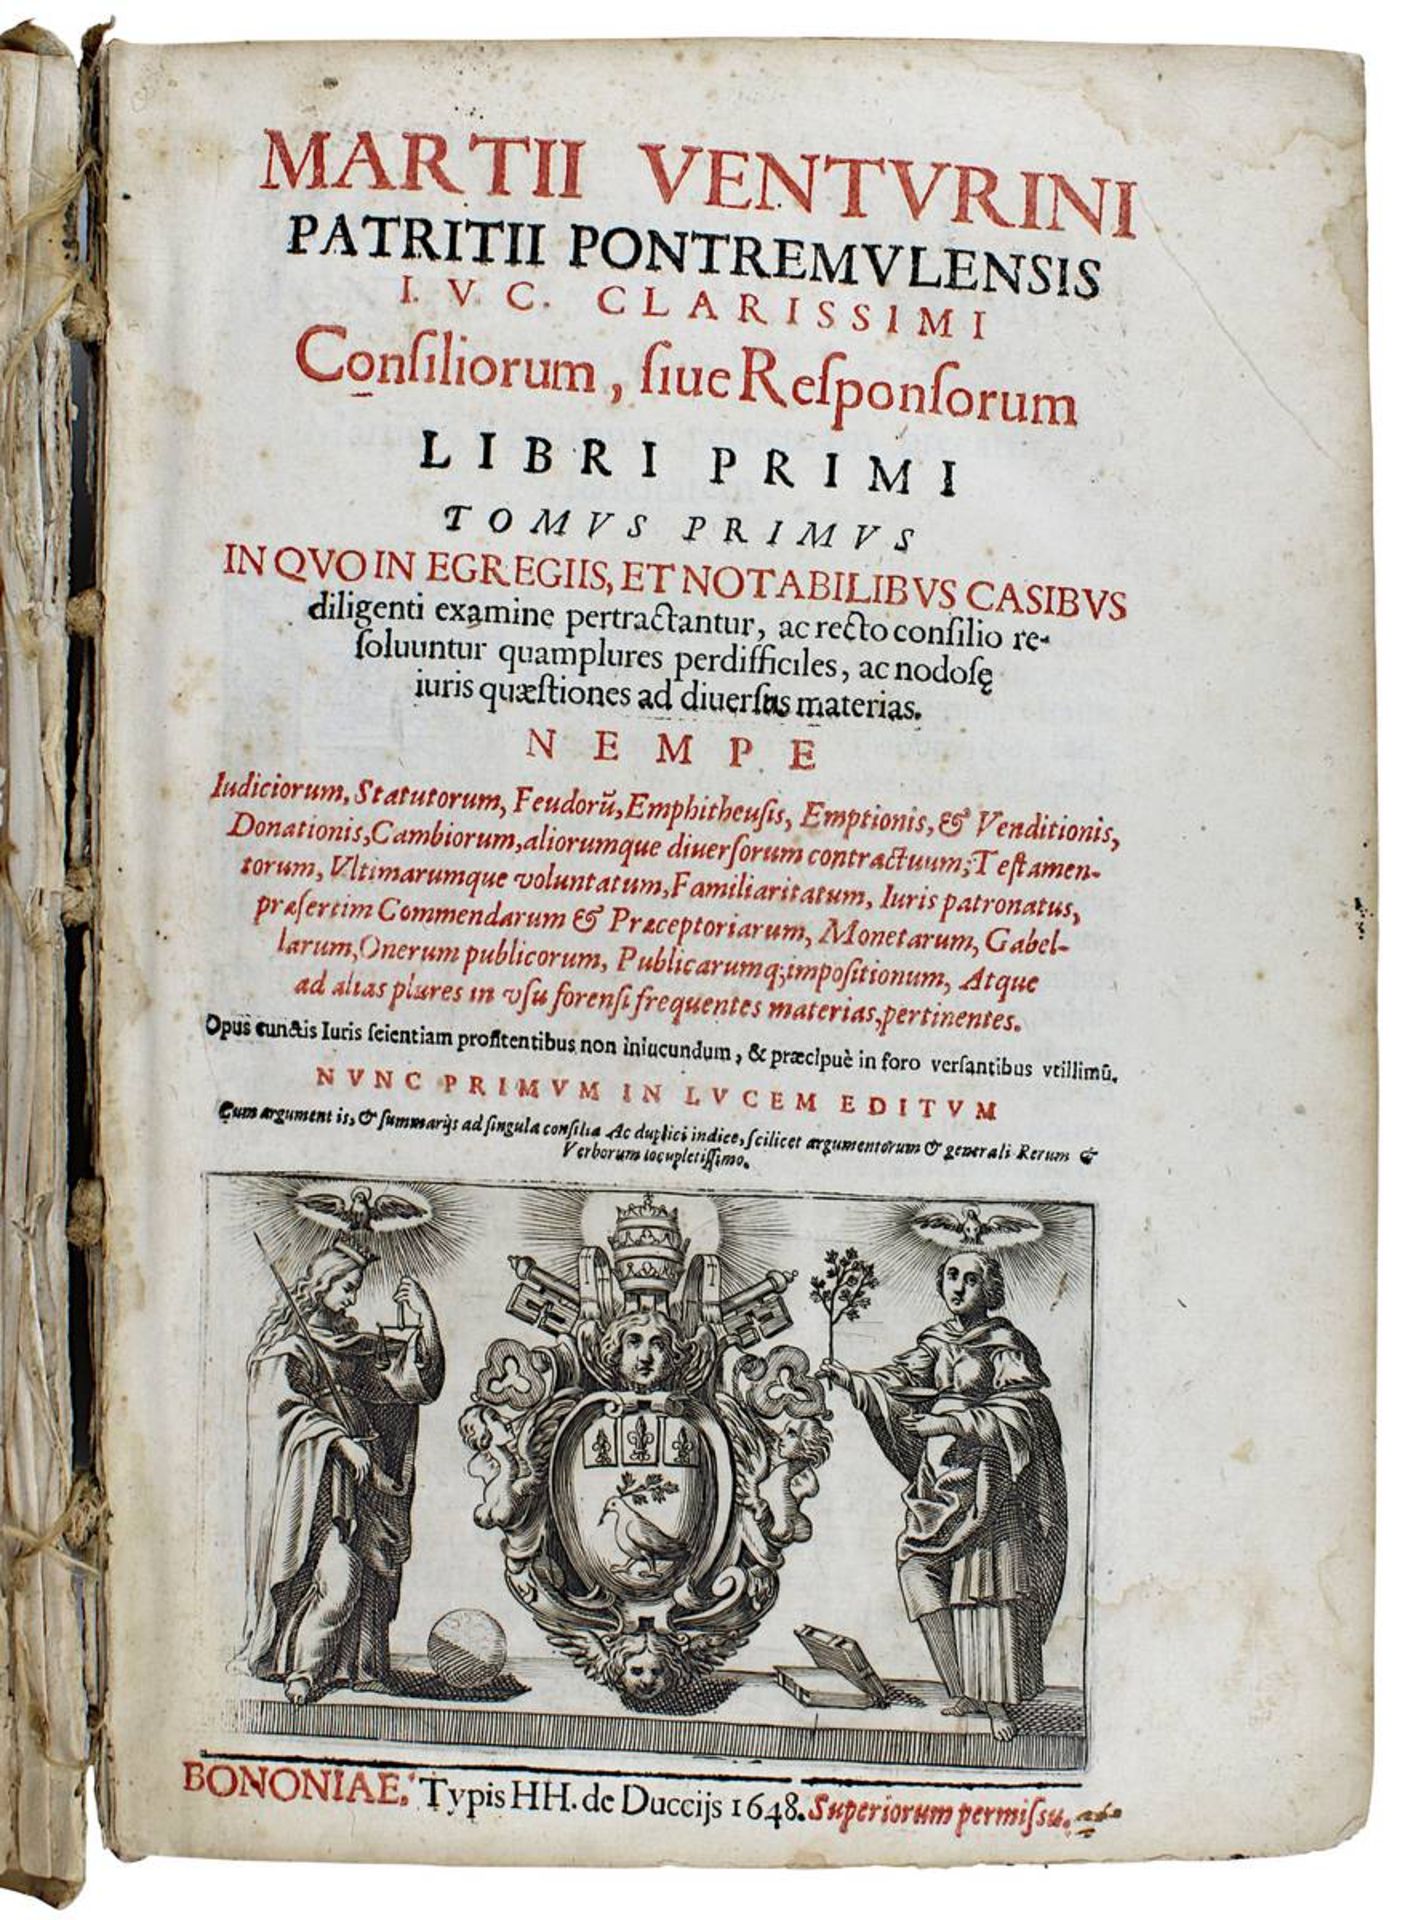 Venturinus, Martius "Patritii Pontremulensis J.U.C. Clarissimi, Consiliorum sive Responsorum...",